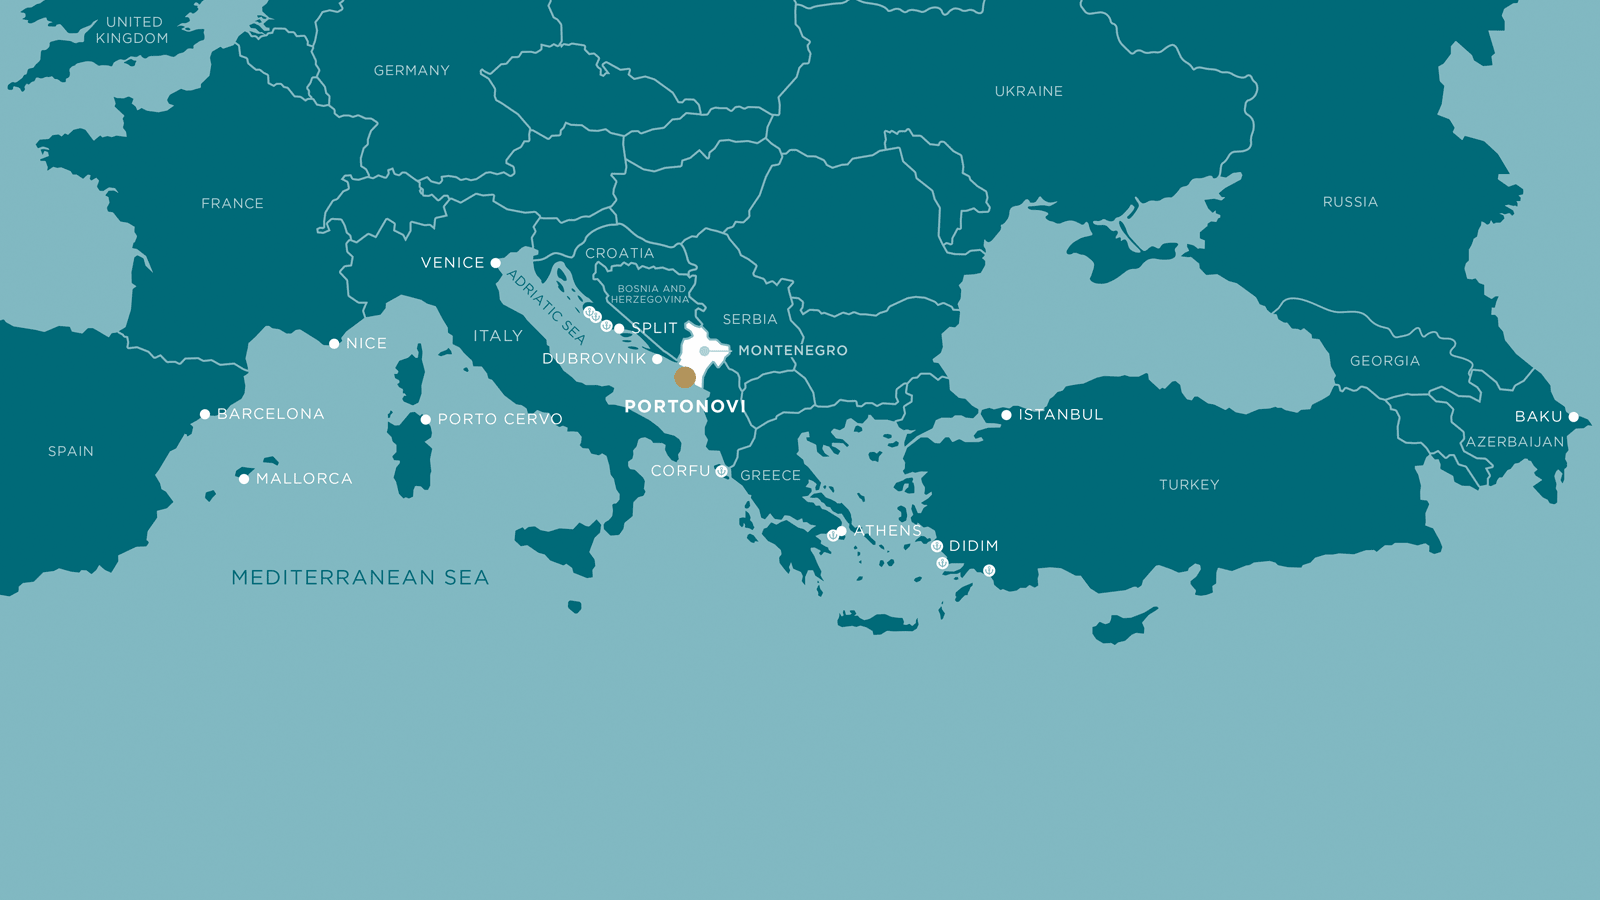 Illustrater map showing Montenegro